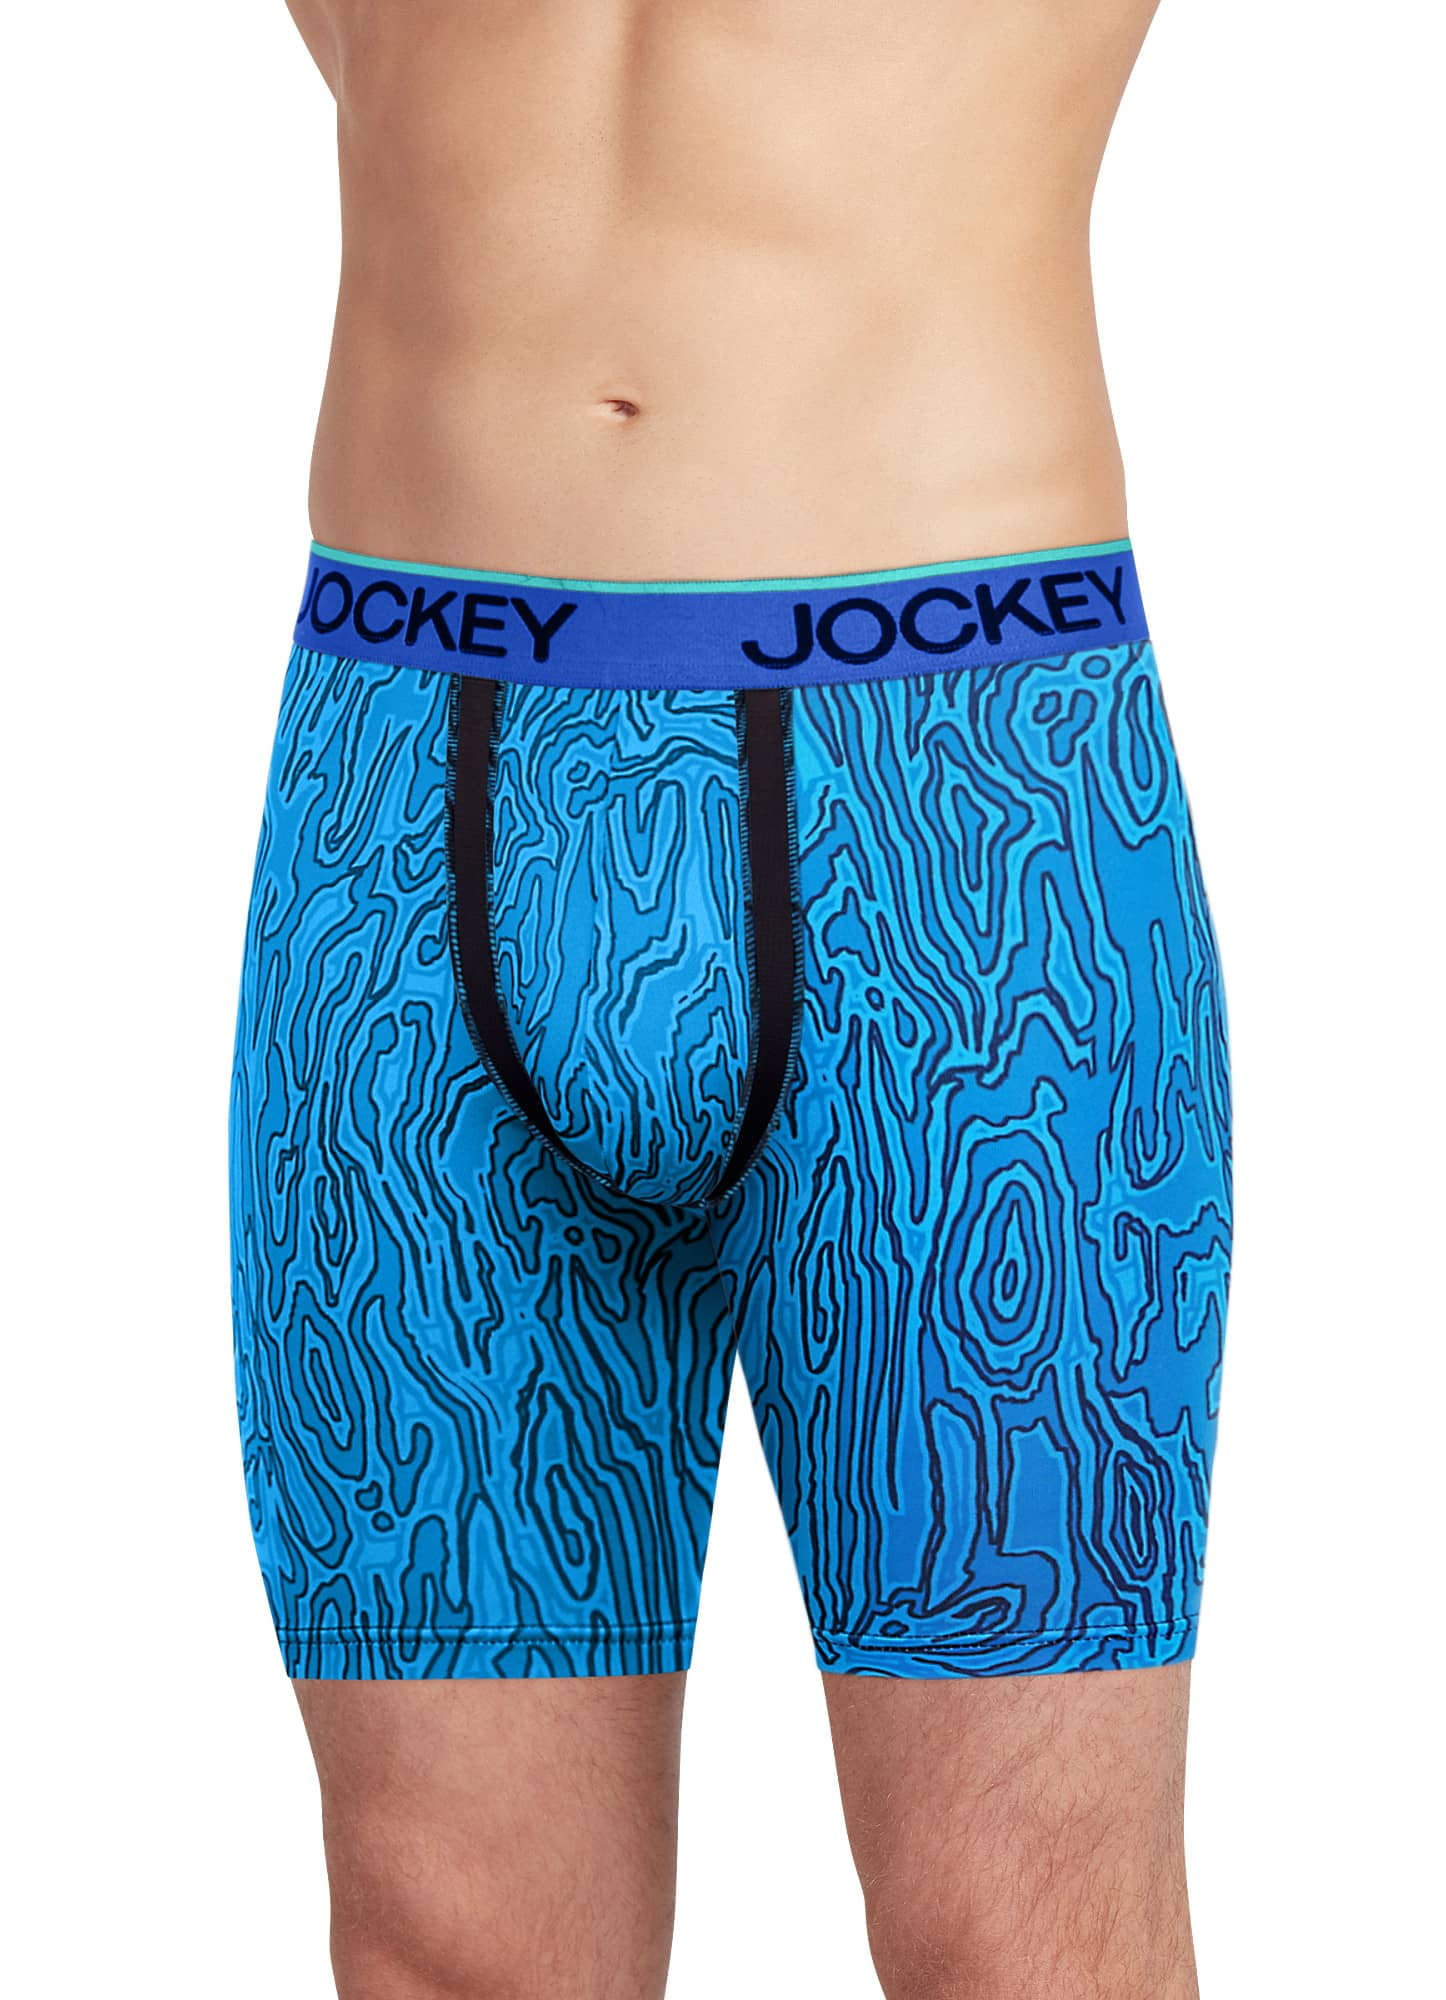 Jockey Men's Underwear Chafe Proof Pouch Microfiber 3 Trunk, Black, L